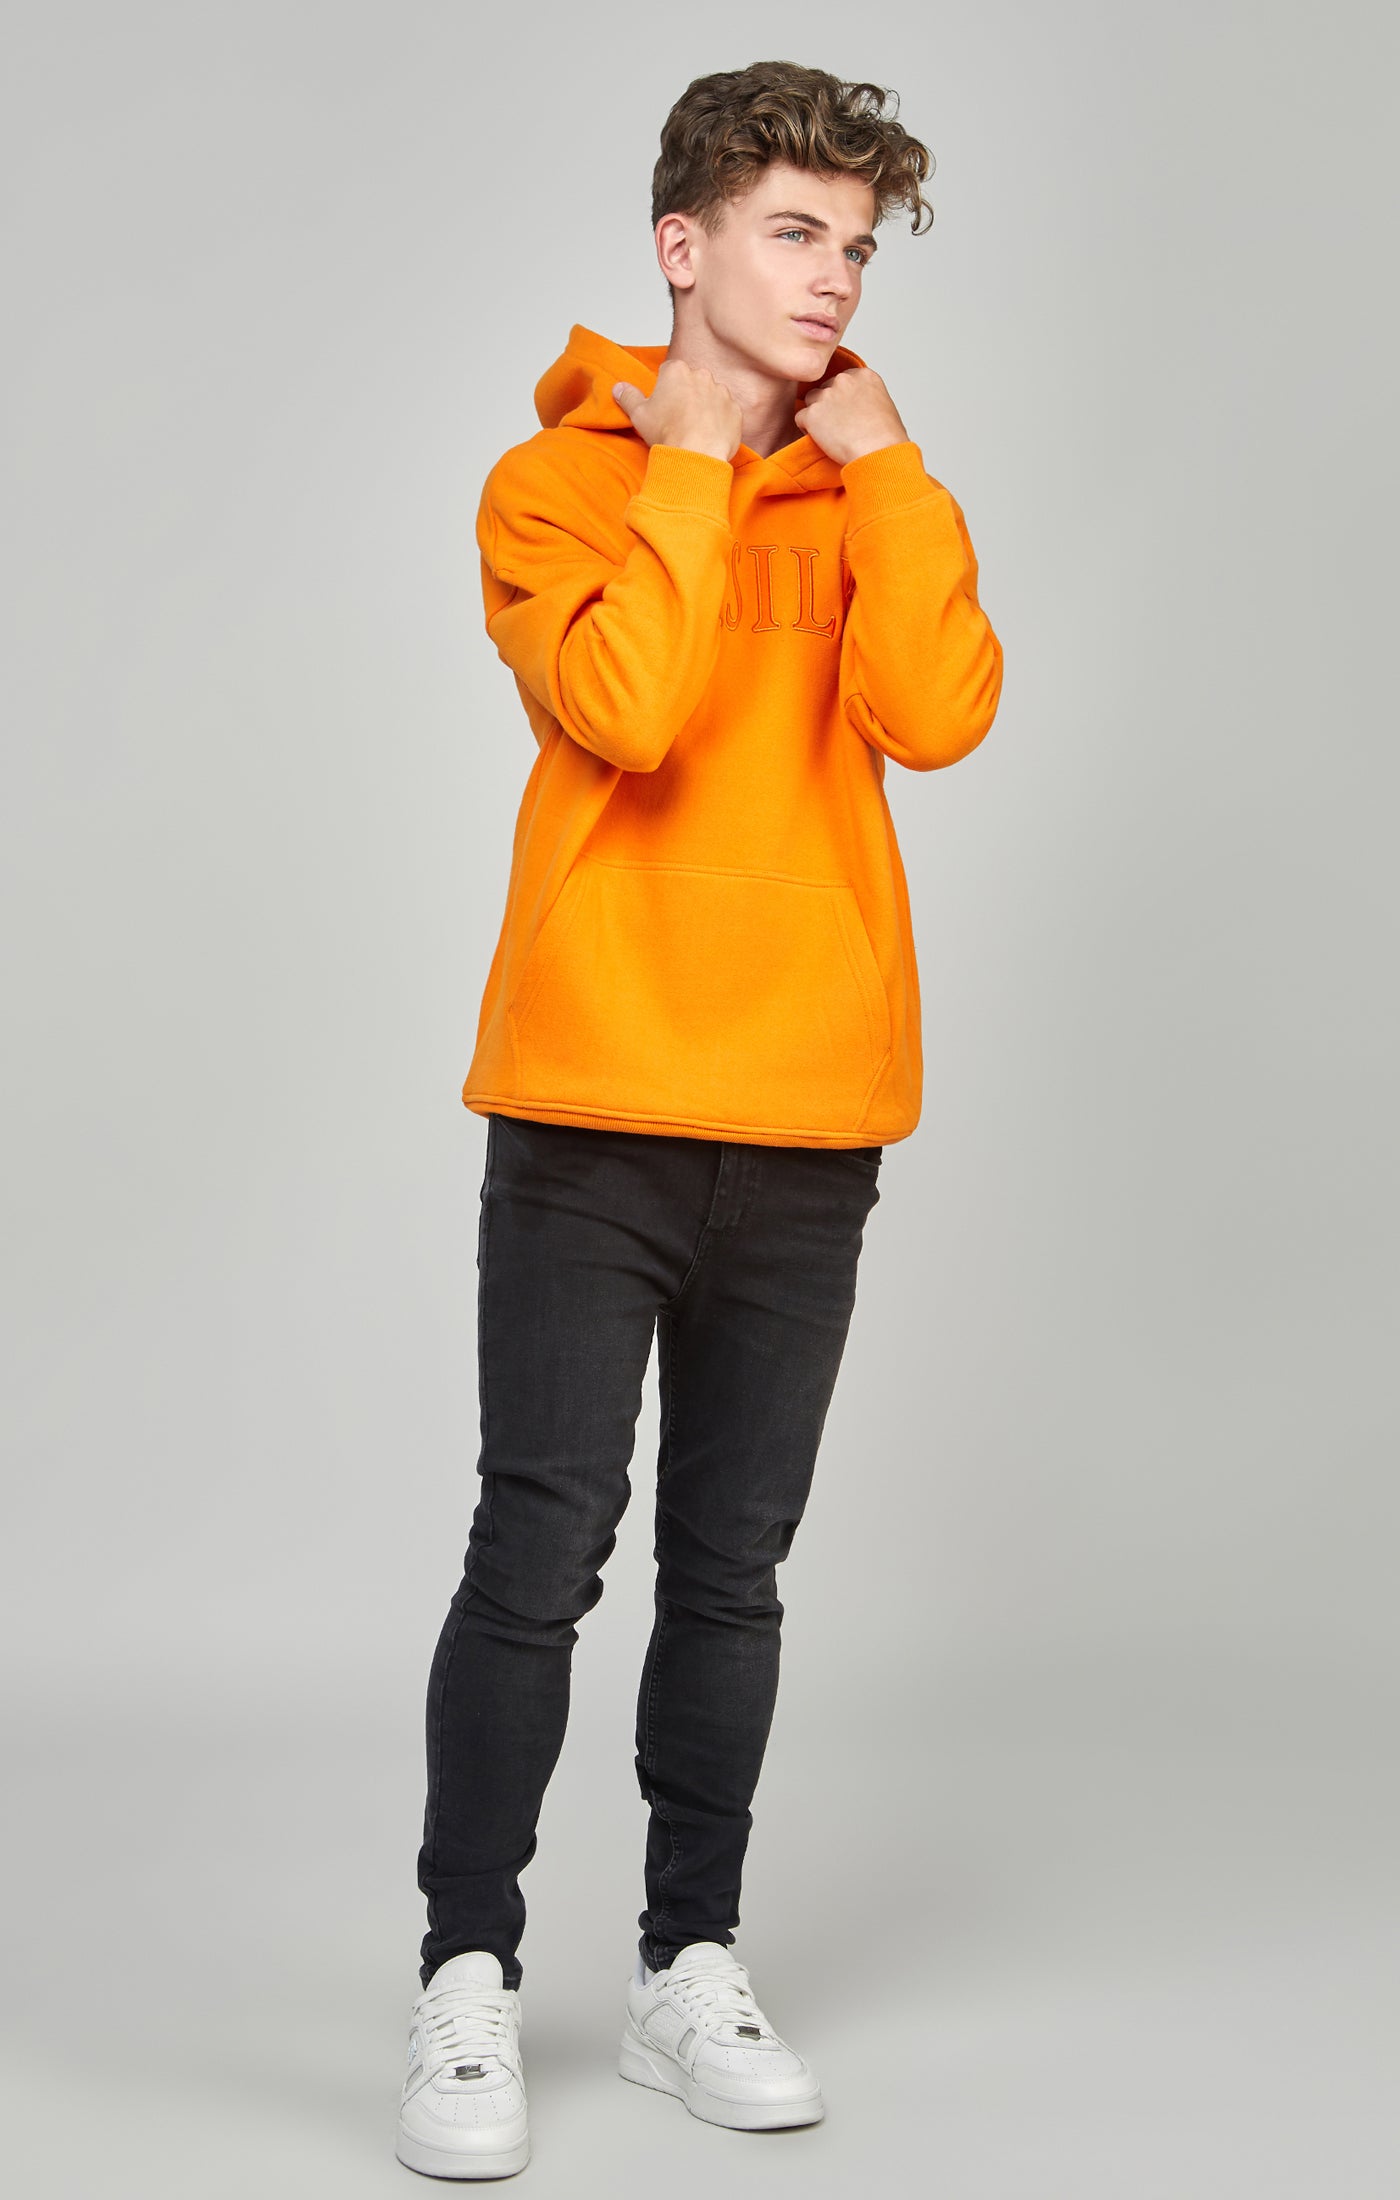 Orangefarbener Kapuzenpullover mit Applikation in entspannter Passform für Jungen (3)